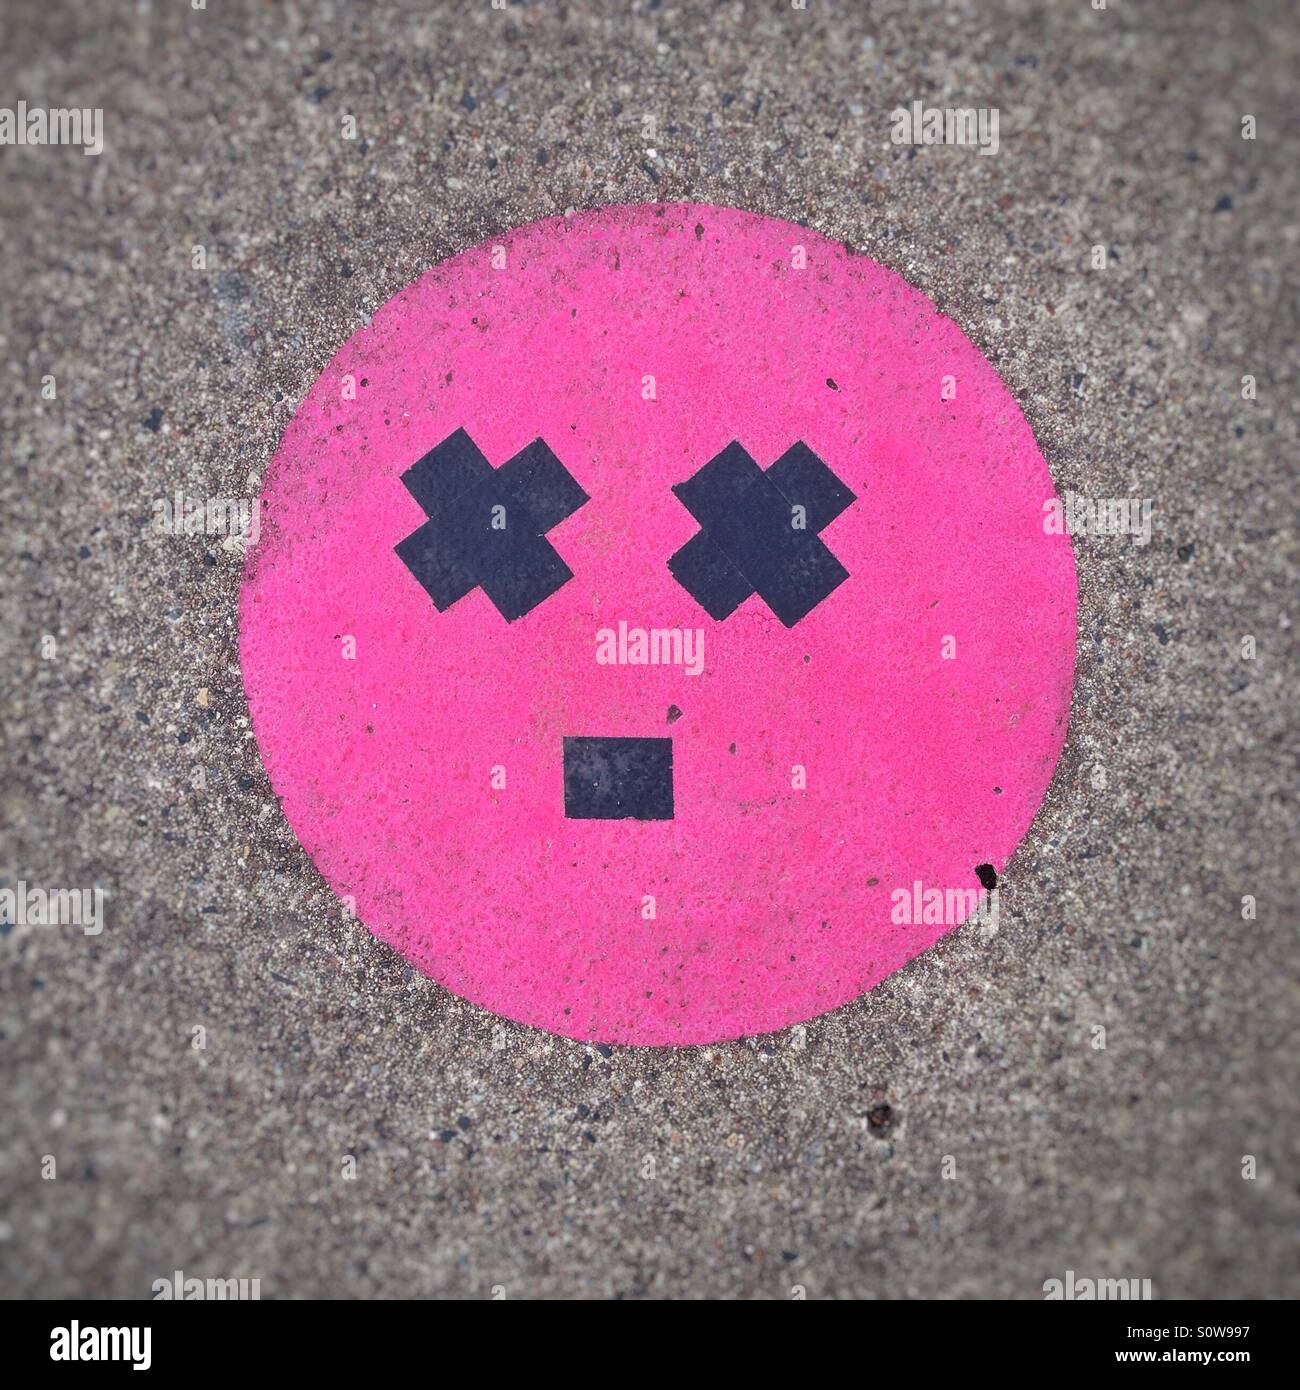 Schwindel oder erstaunt Gesicht Smiley Emoticon oder Emoji erstellt auf dem Bürgersteig mit Klebeband Stockfoto